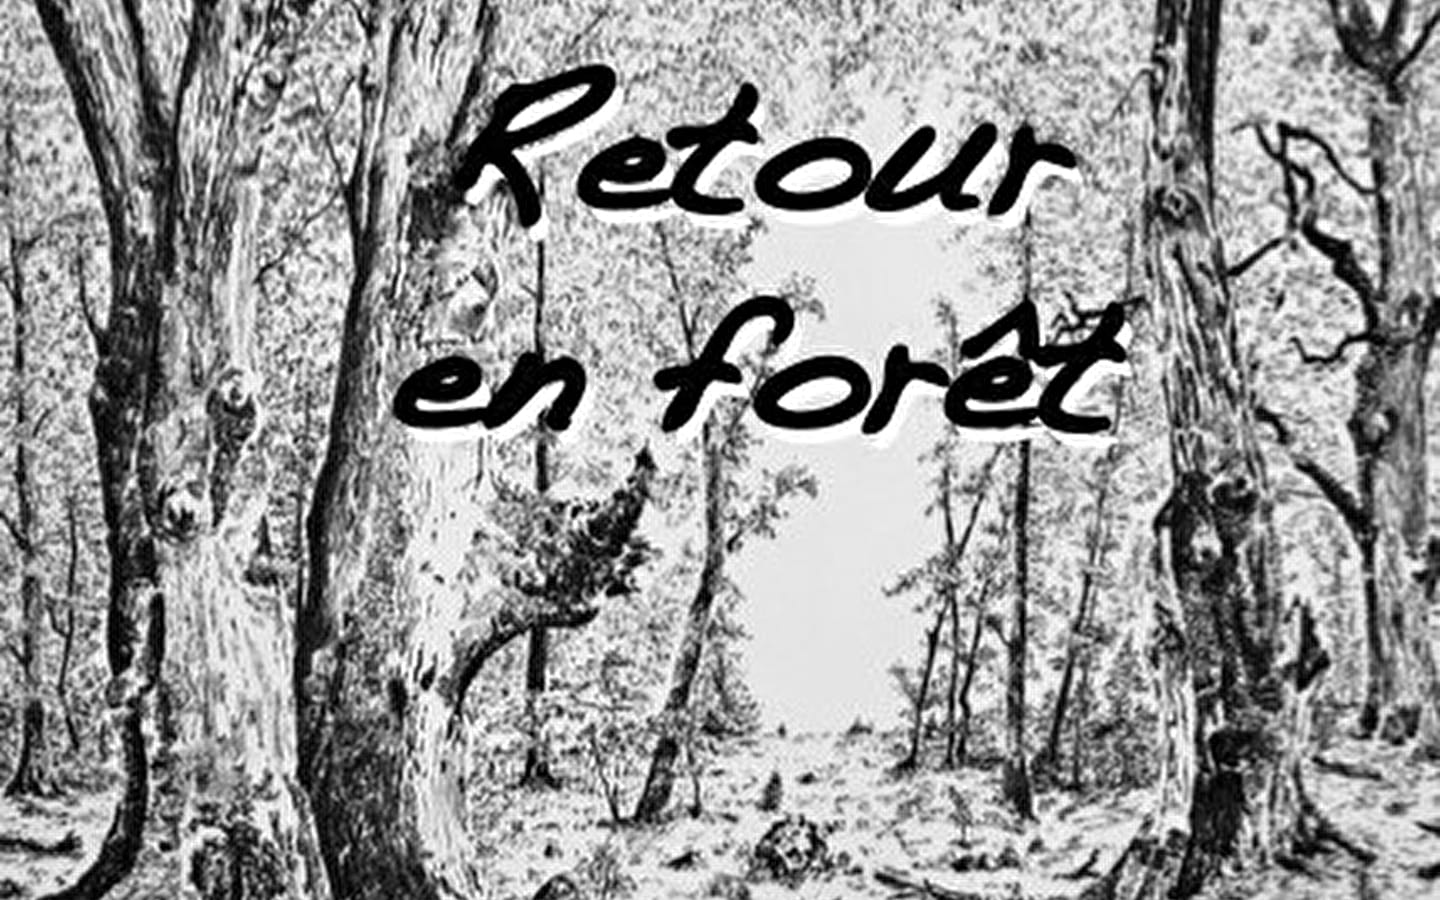 Retour en forêt